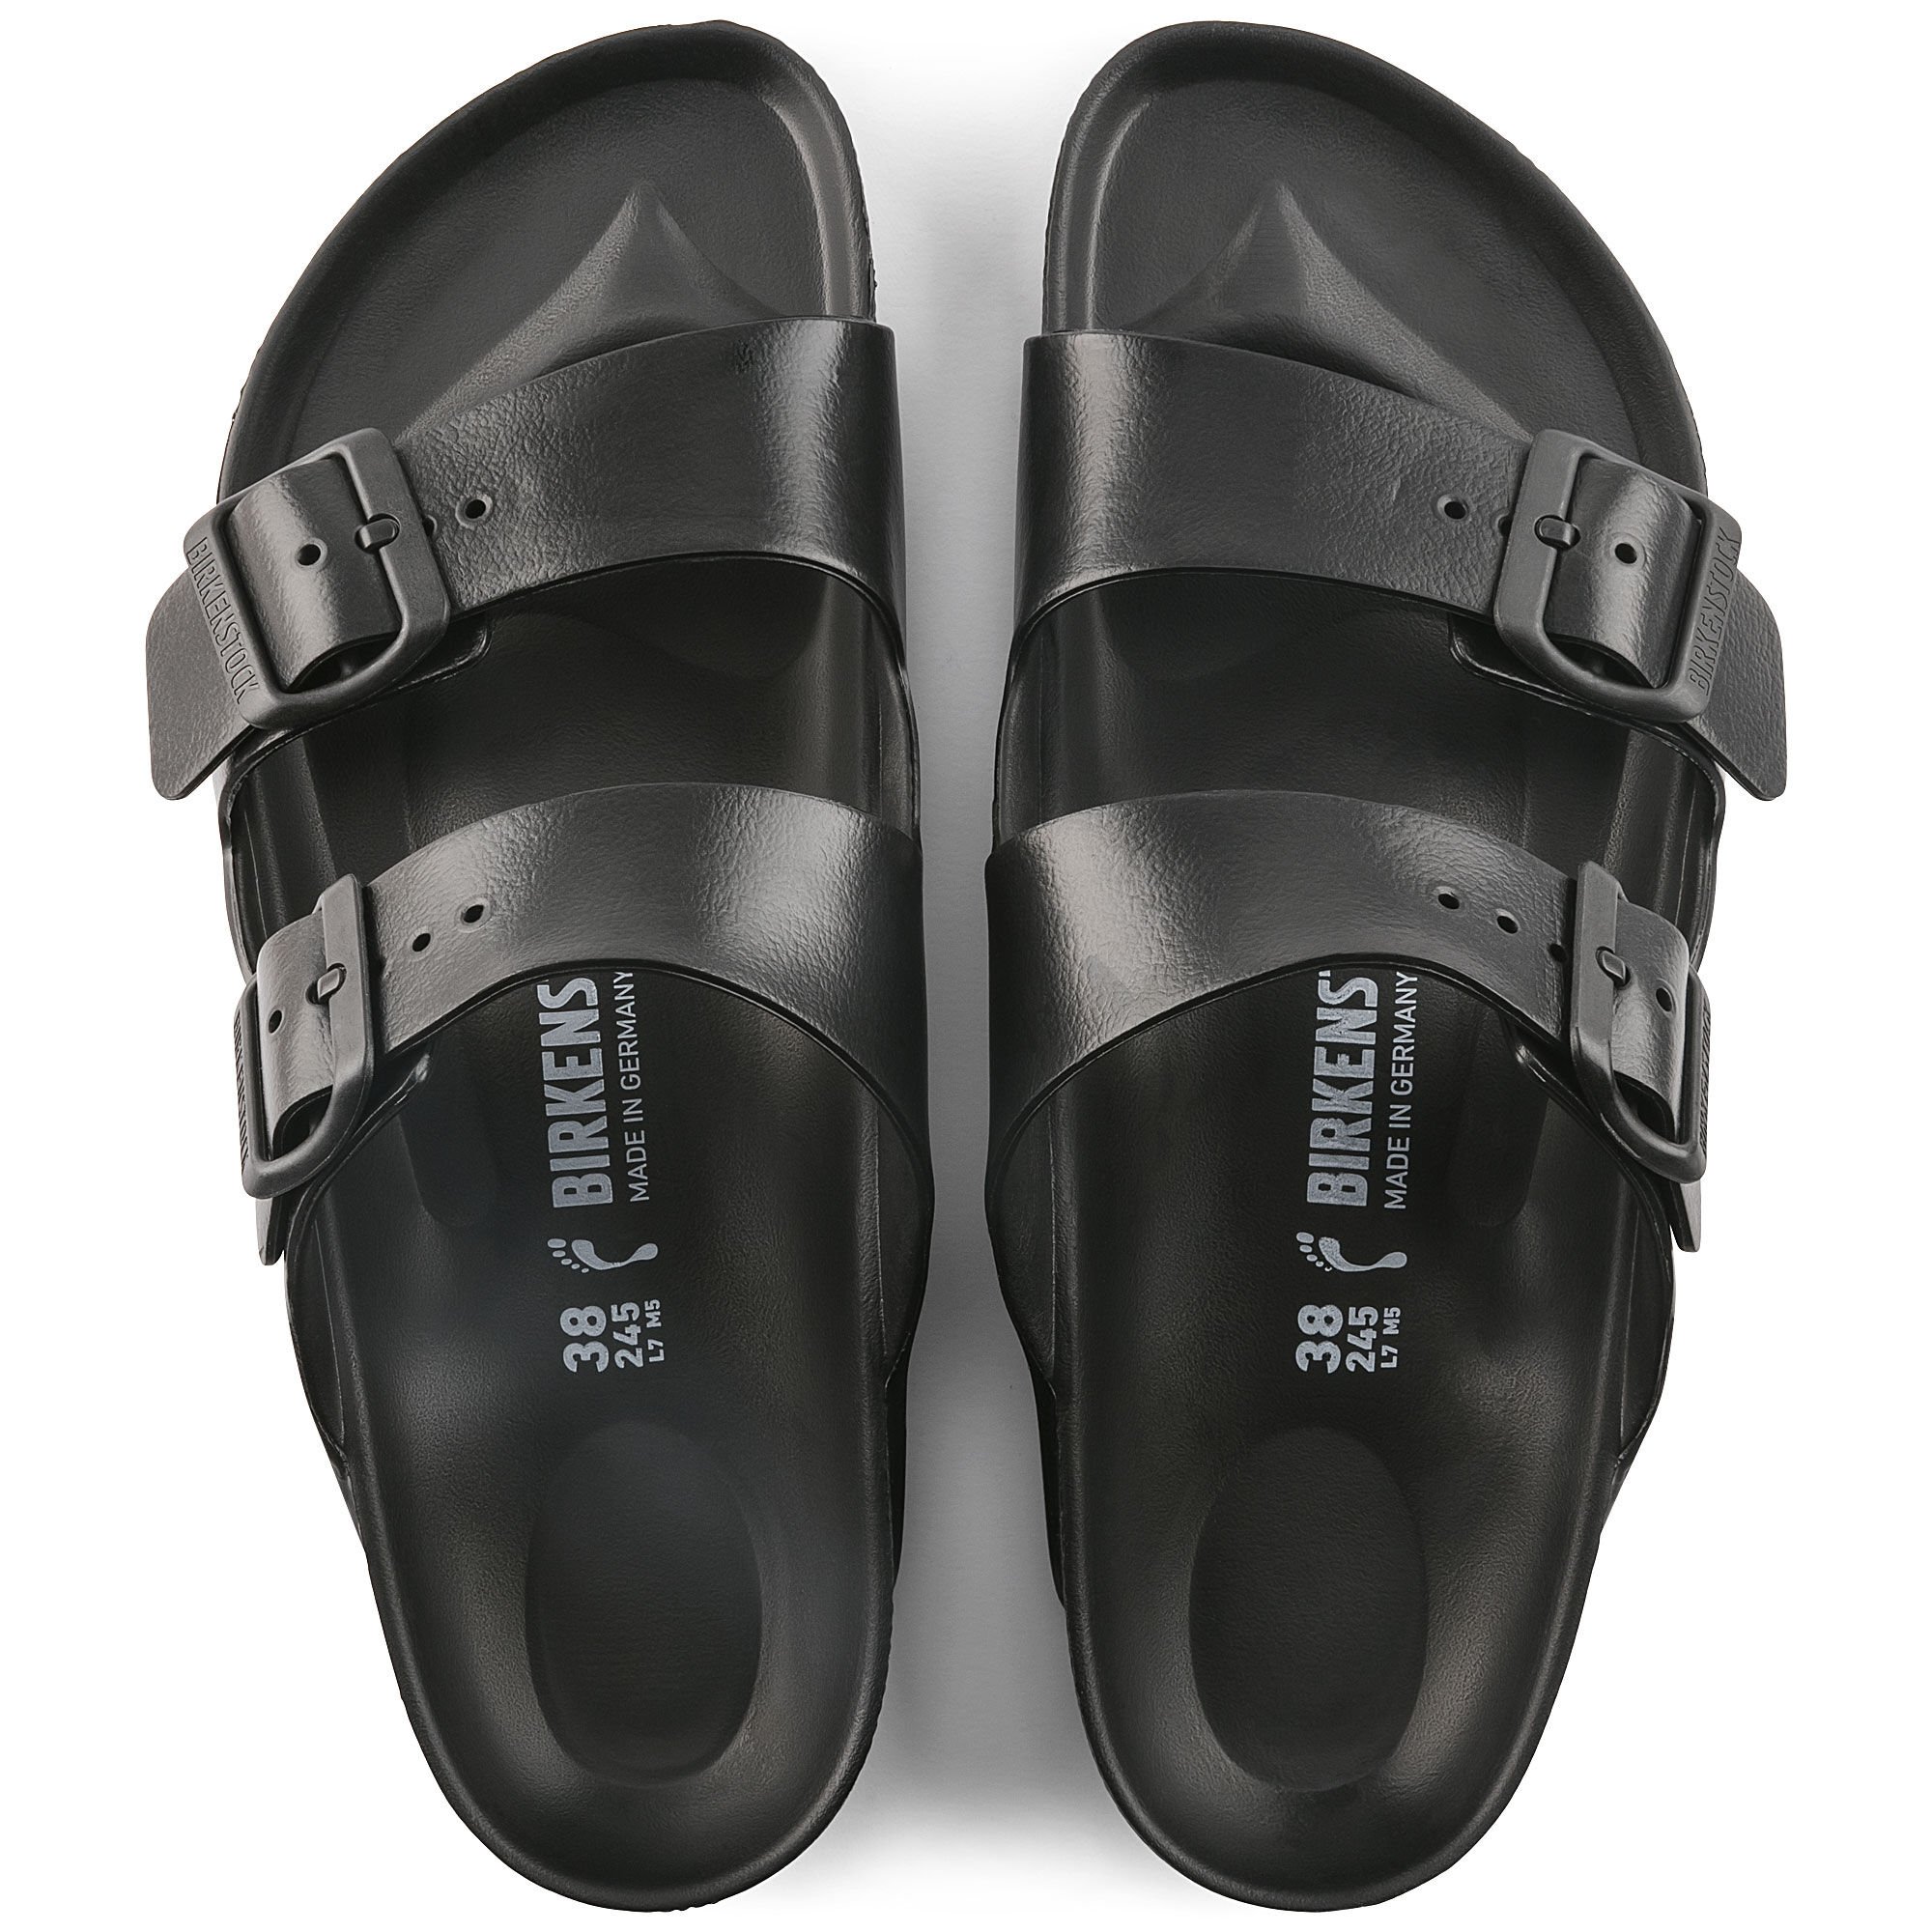 black rubber birkenstock sandals